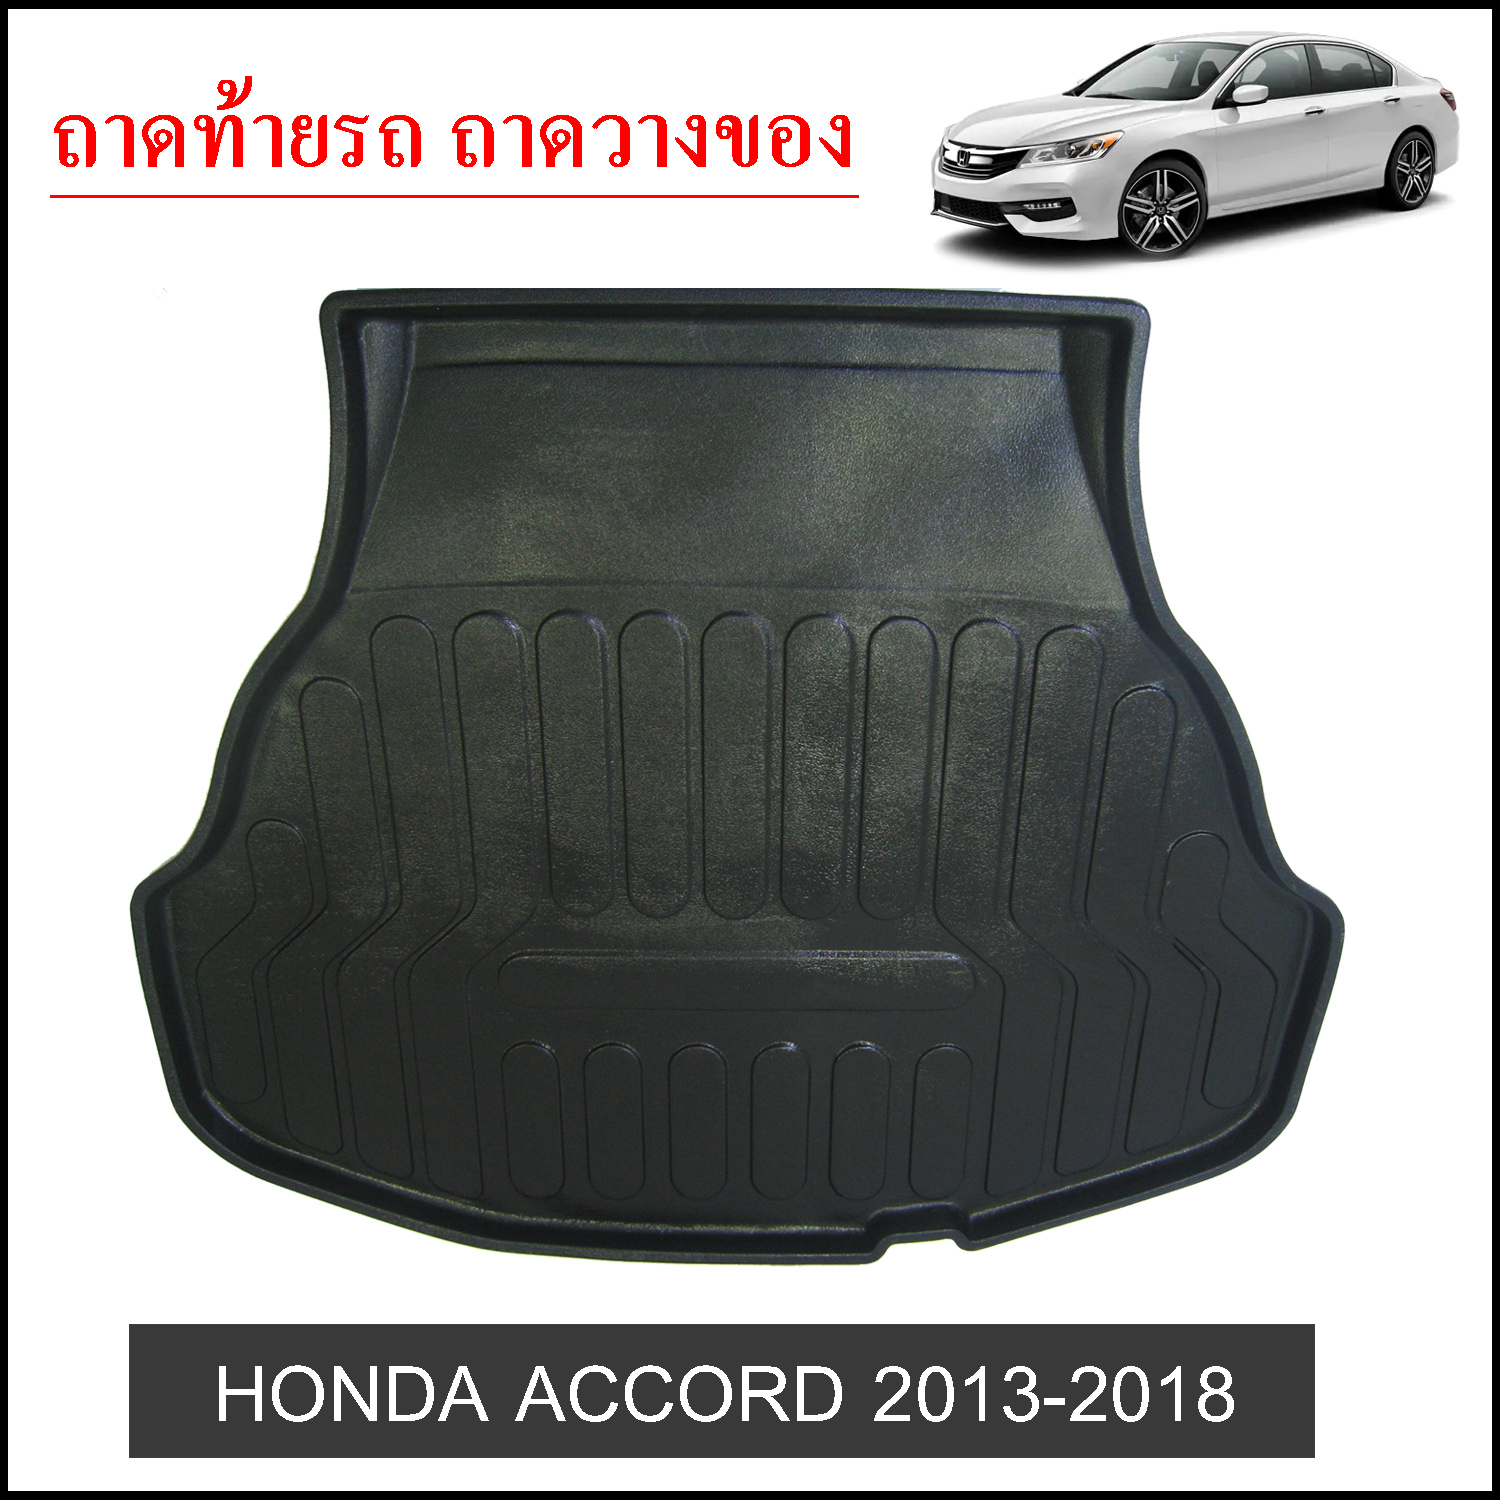 ถาดท้ายวางของ Honda Accord 2013-2018